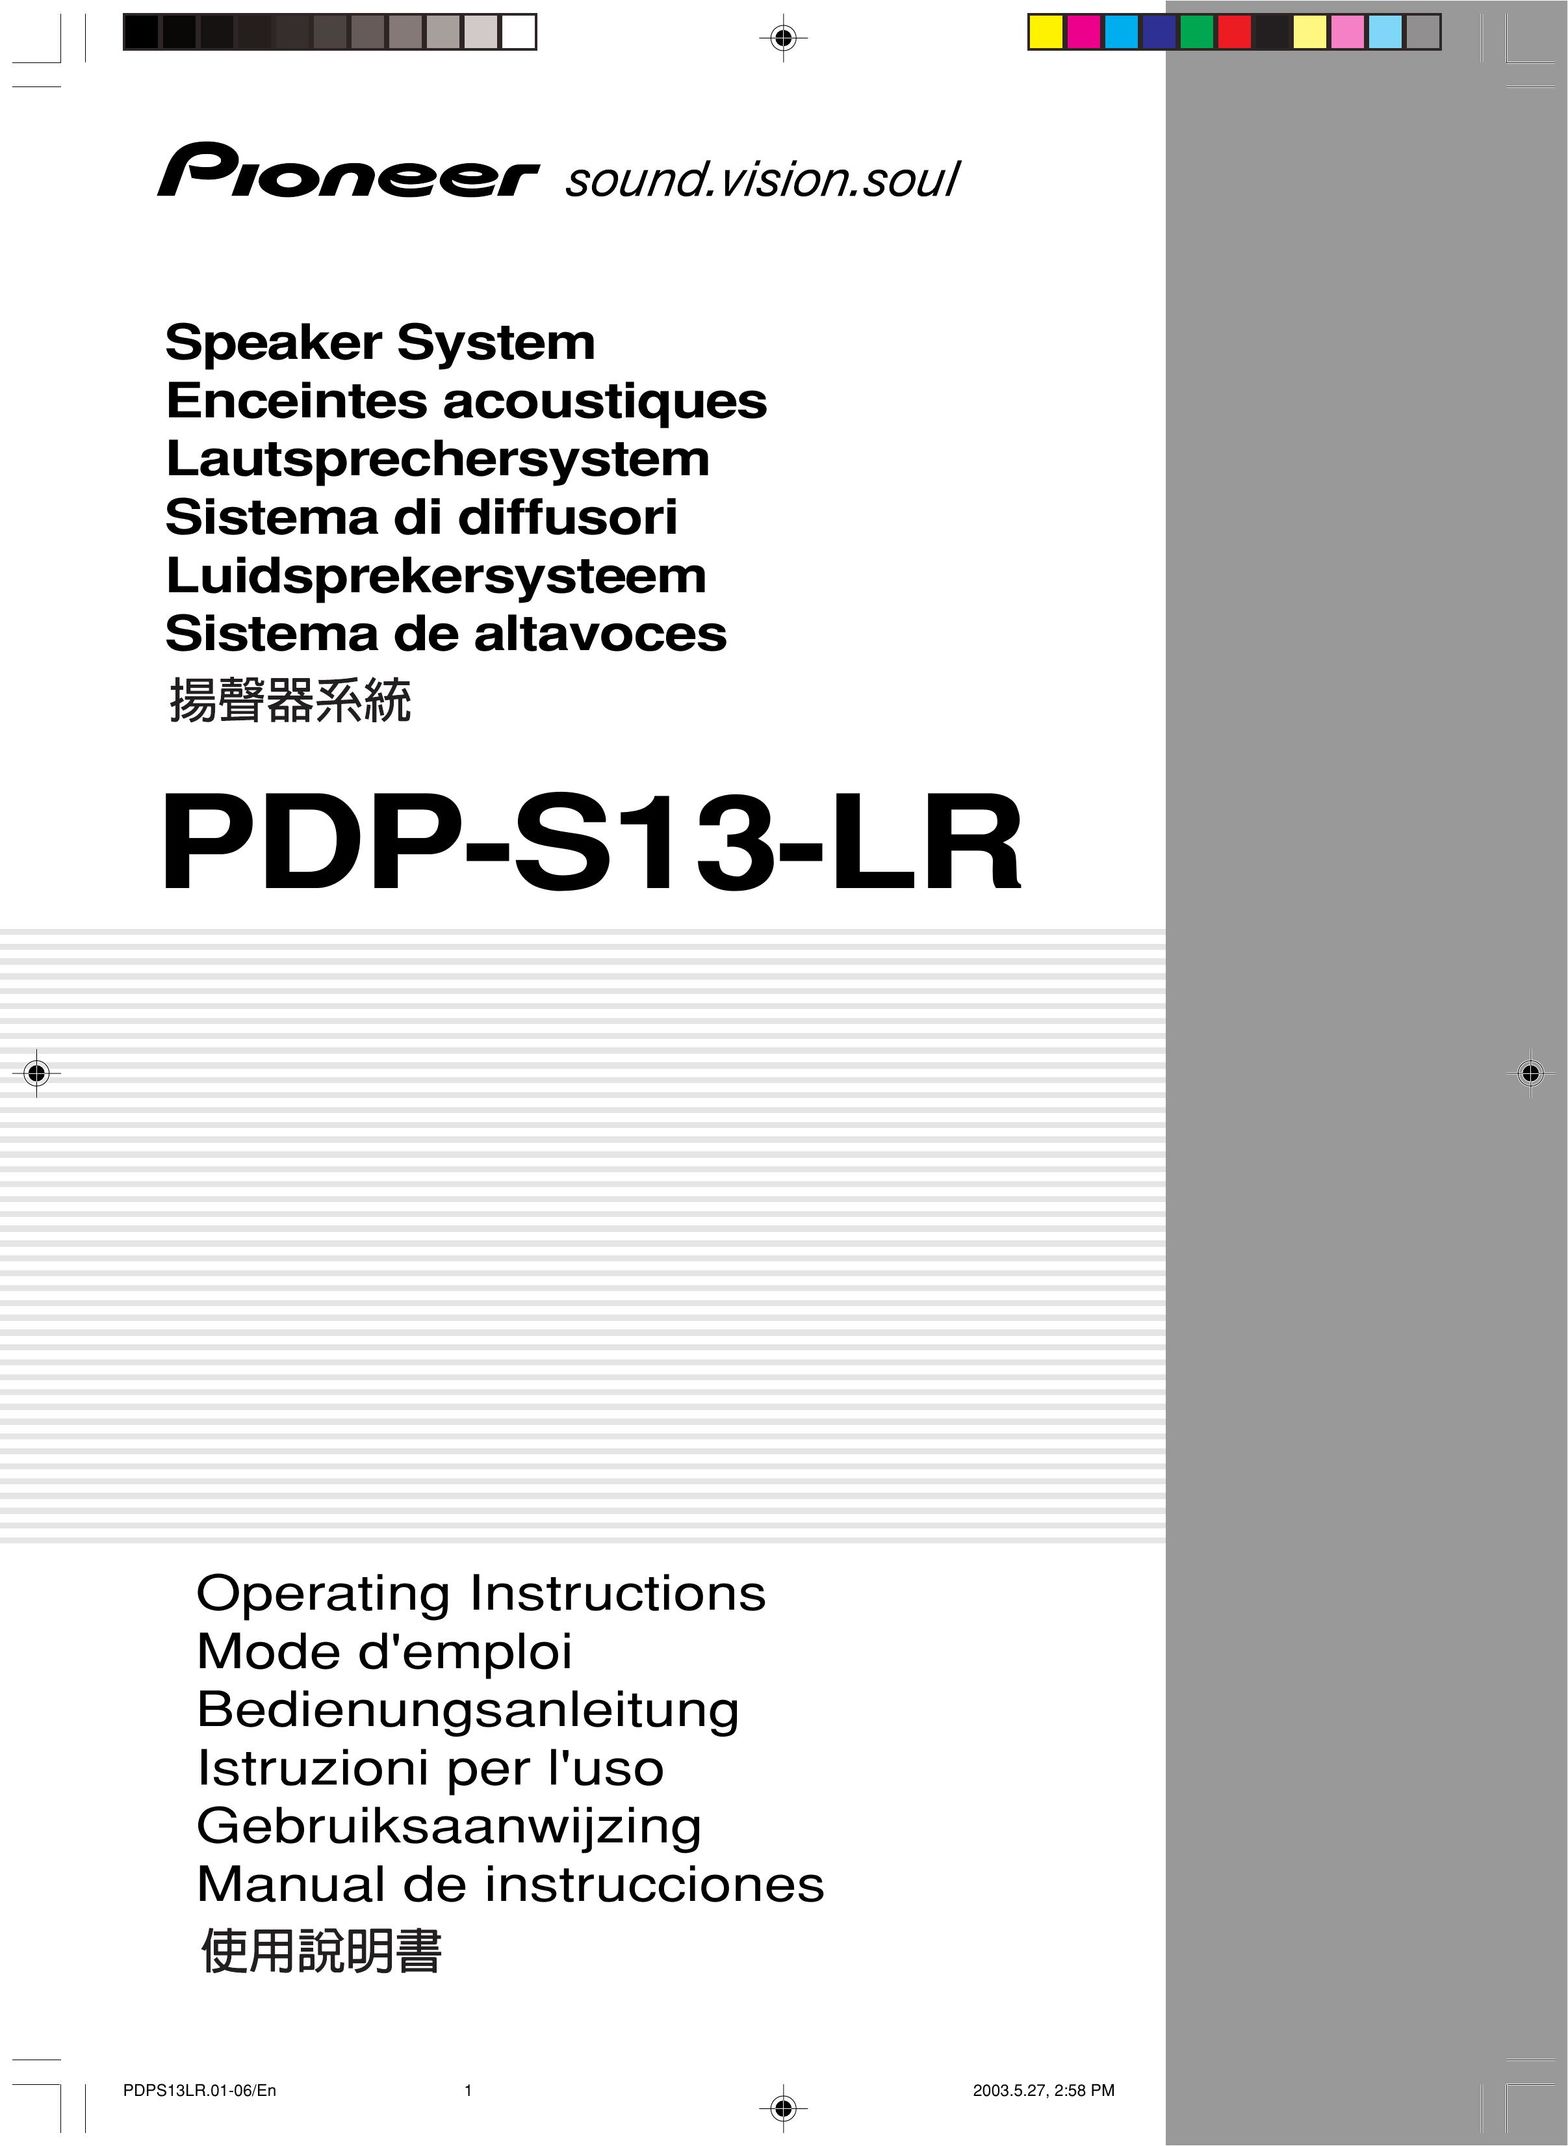 Pioneer PDP-S13-LR Speaker User Manual